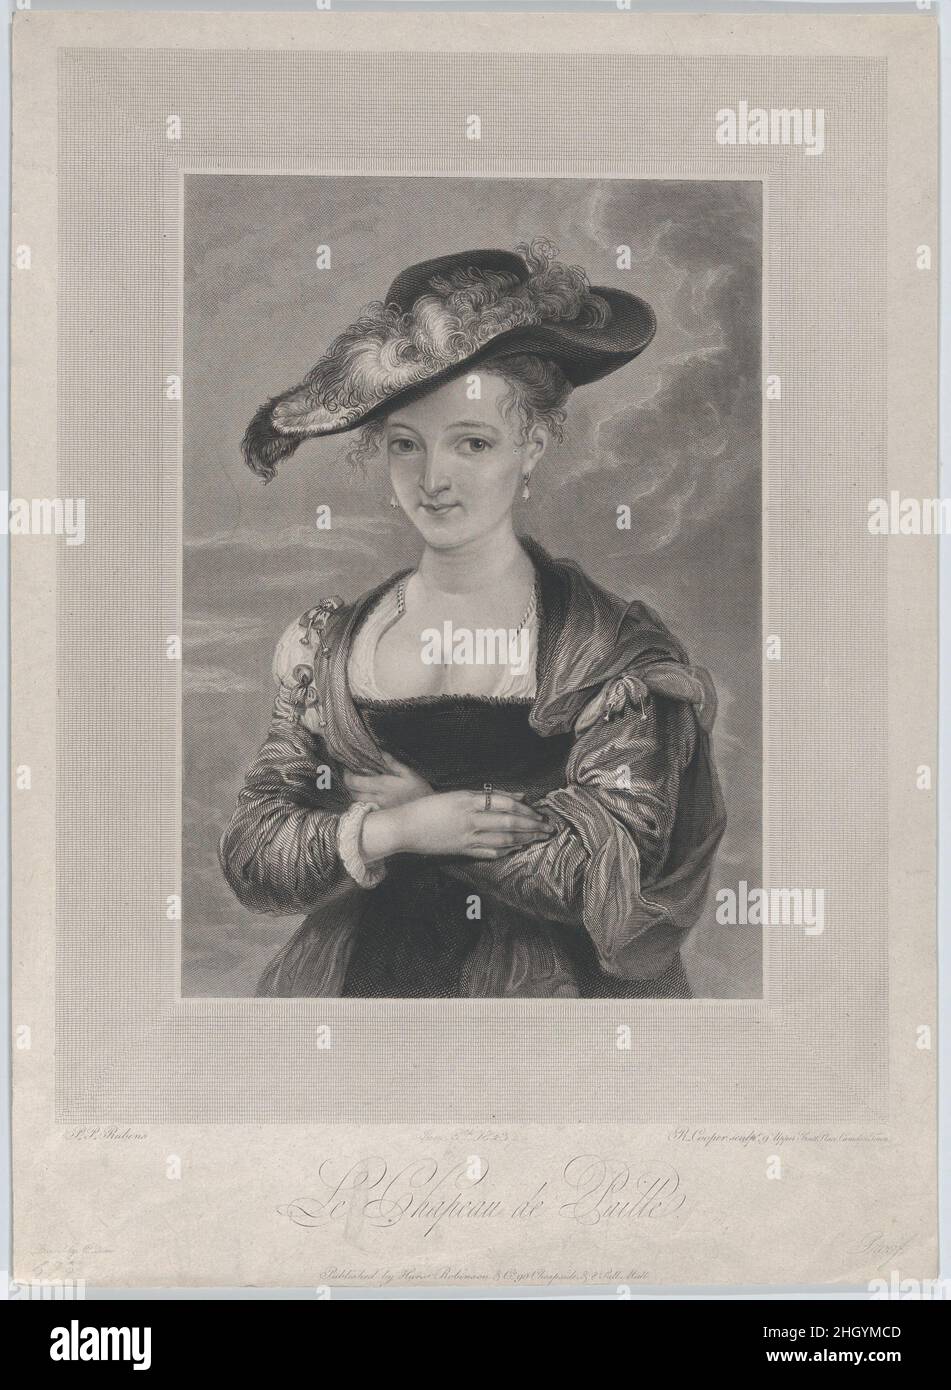 The Straw Hat (Le Chapeau de Paille), Portrait of Susanna Lunden 1823  Robert Cooper. The Straw Hat (Le Chapeau de Paille), Portrait of Susanna  Lunden. Robert Cooper (British, active 1795–1836). 1823. Engraving.